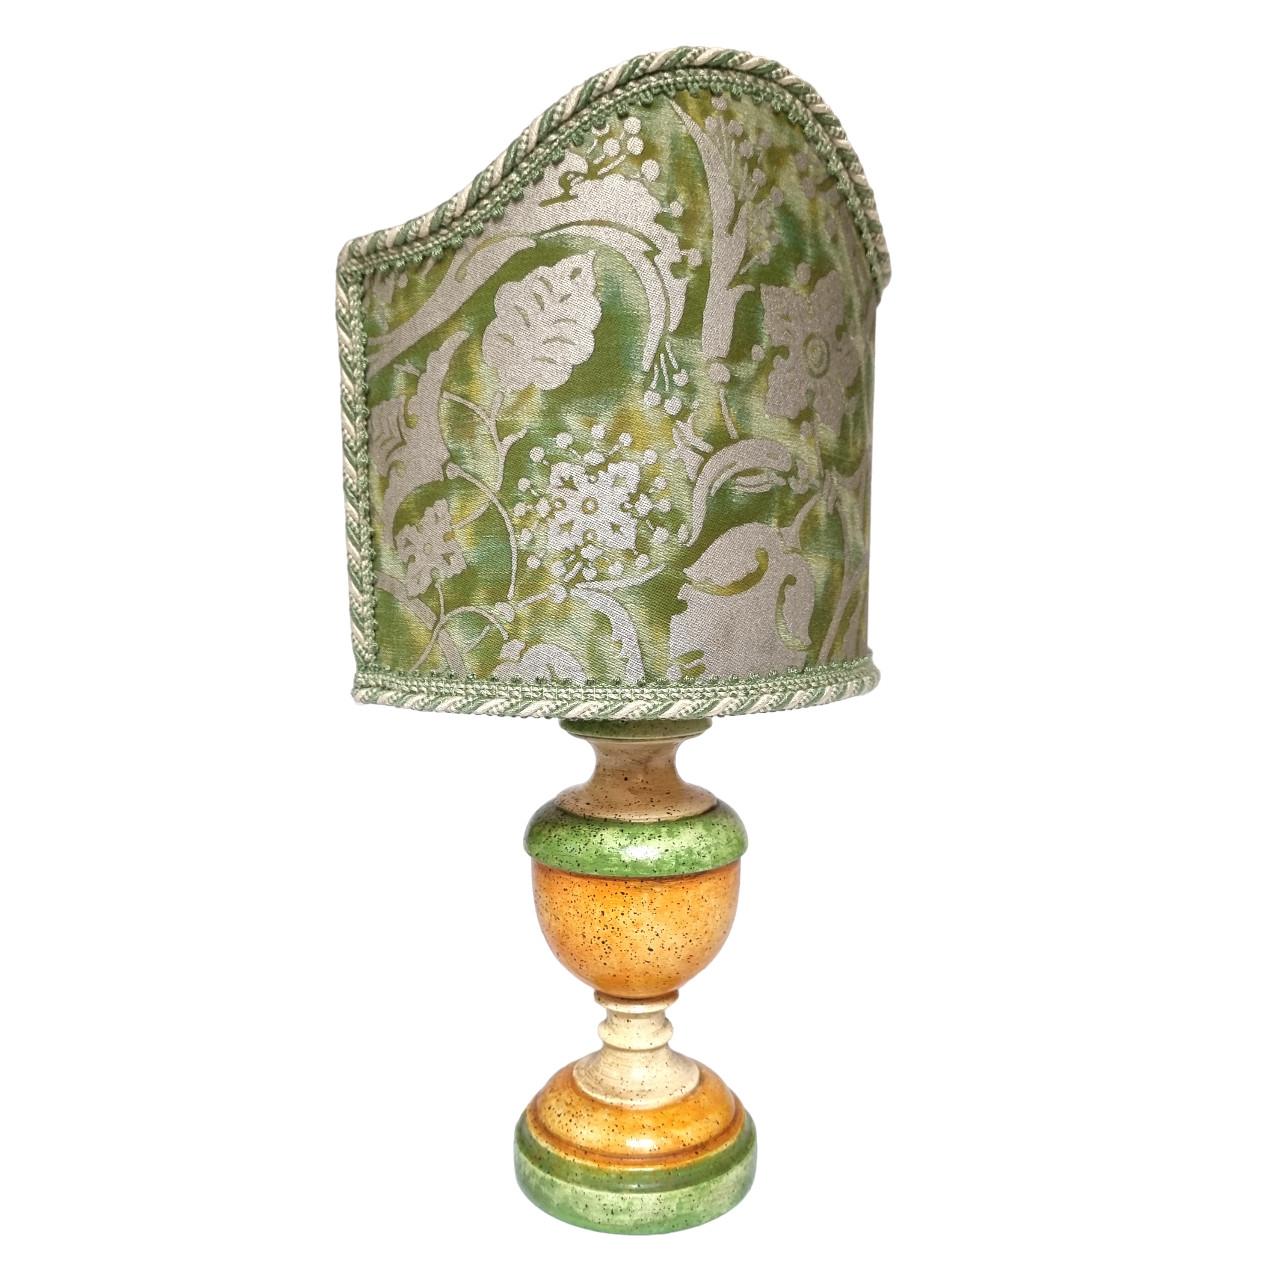 Dies ist ein absolut fabelhaftes Paar von grün, orange und elfenbeinfarben lackierten Tischlampen aus gedrechseltem Holz auf einem runden Sockel, handgefertigt in der Toskana (Italien) und mit antiker Patina versehen.
Der Lampenschirm ist neu,